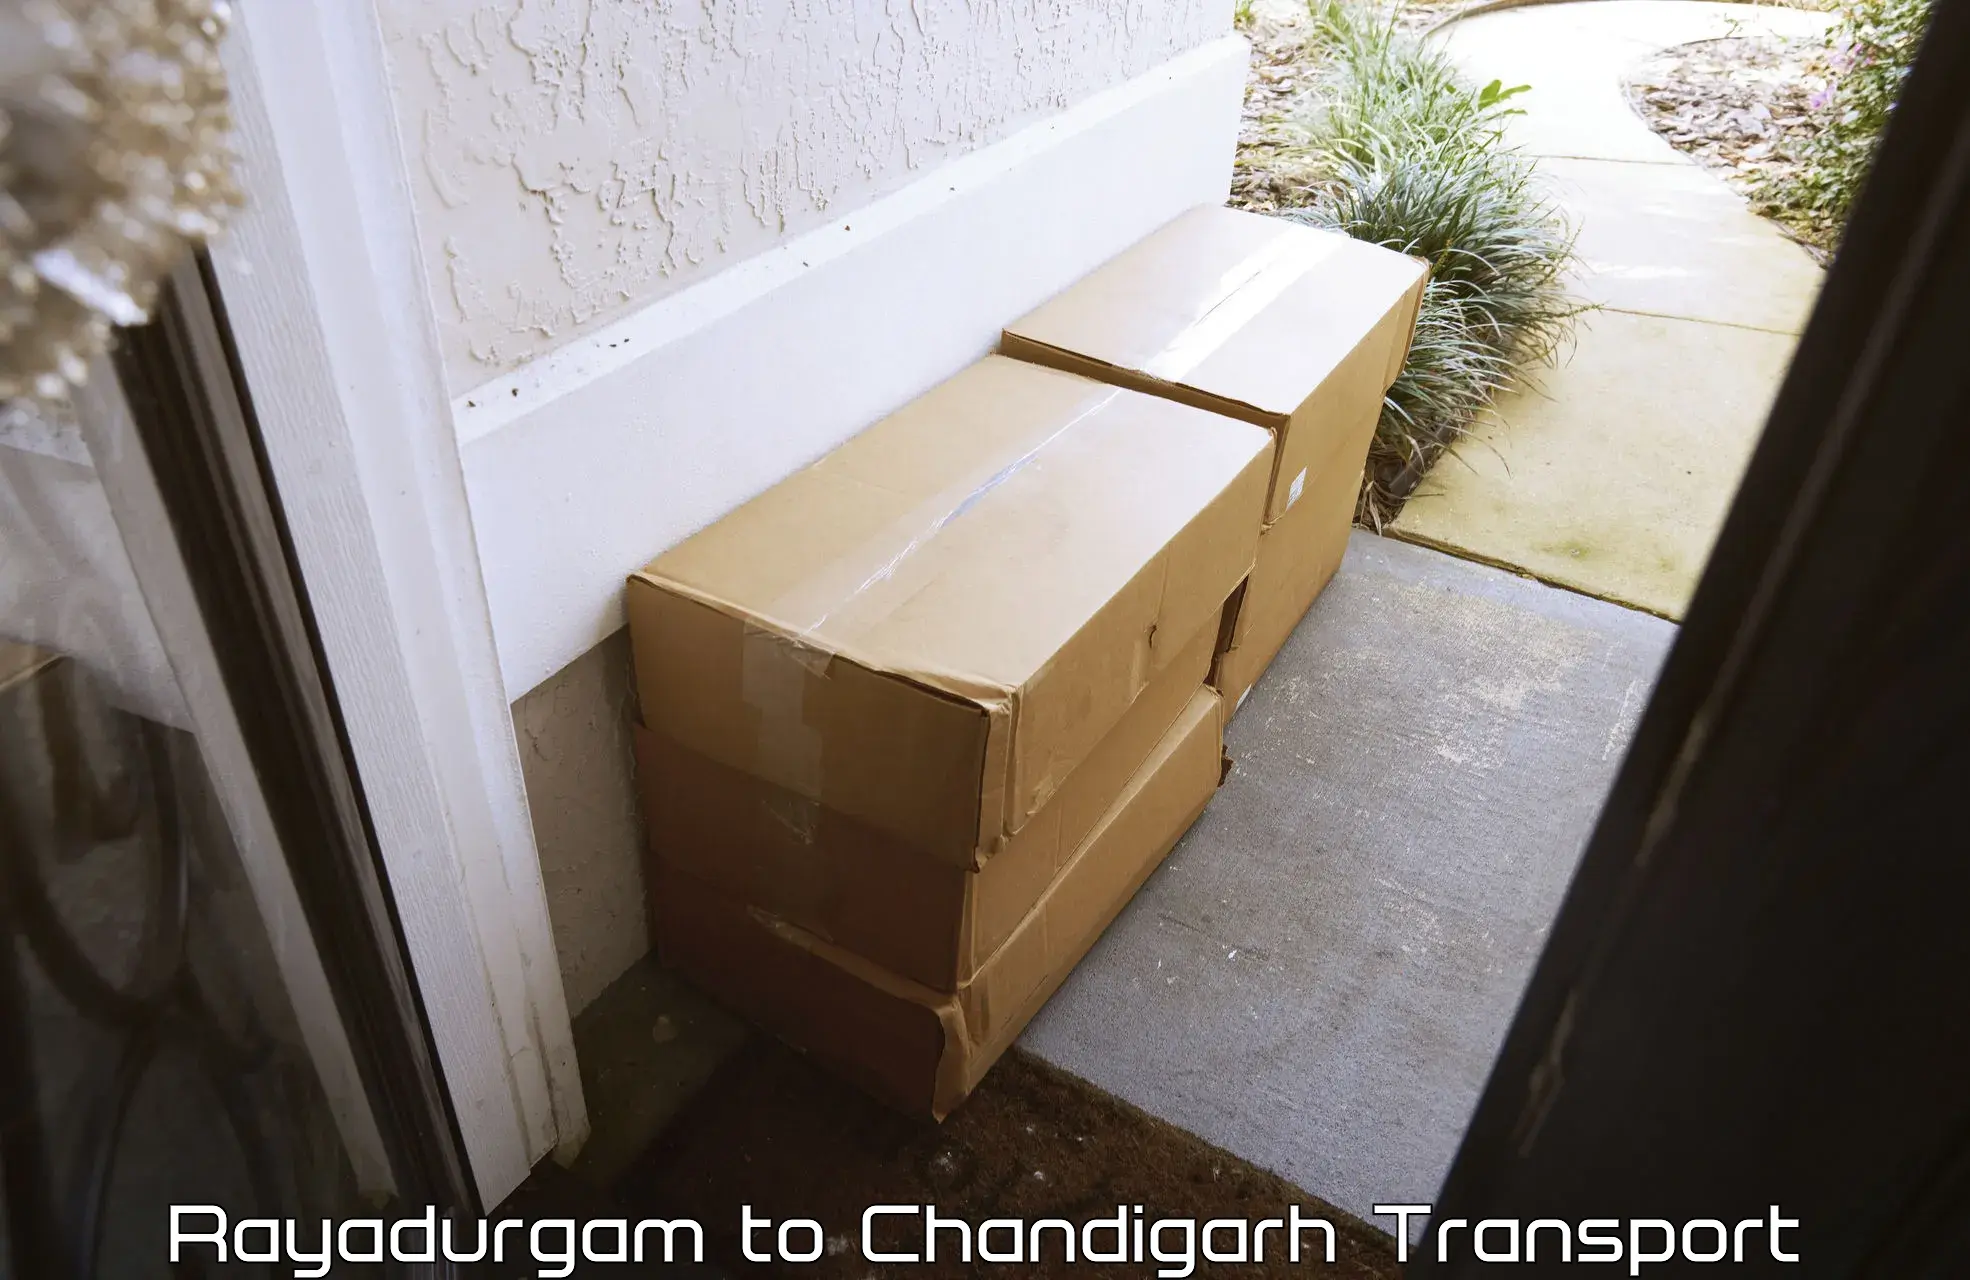 Transport in sharing Rayadurgam to Chandigarh